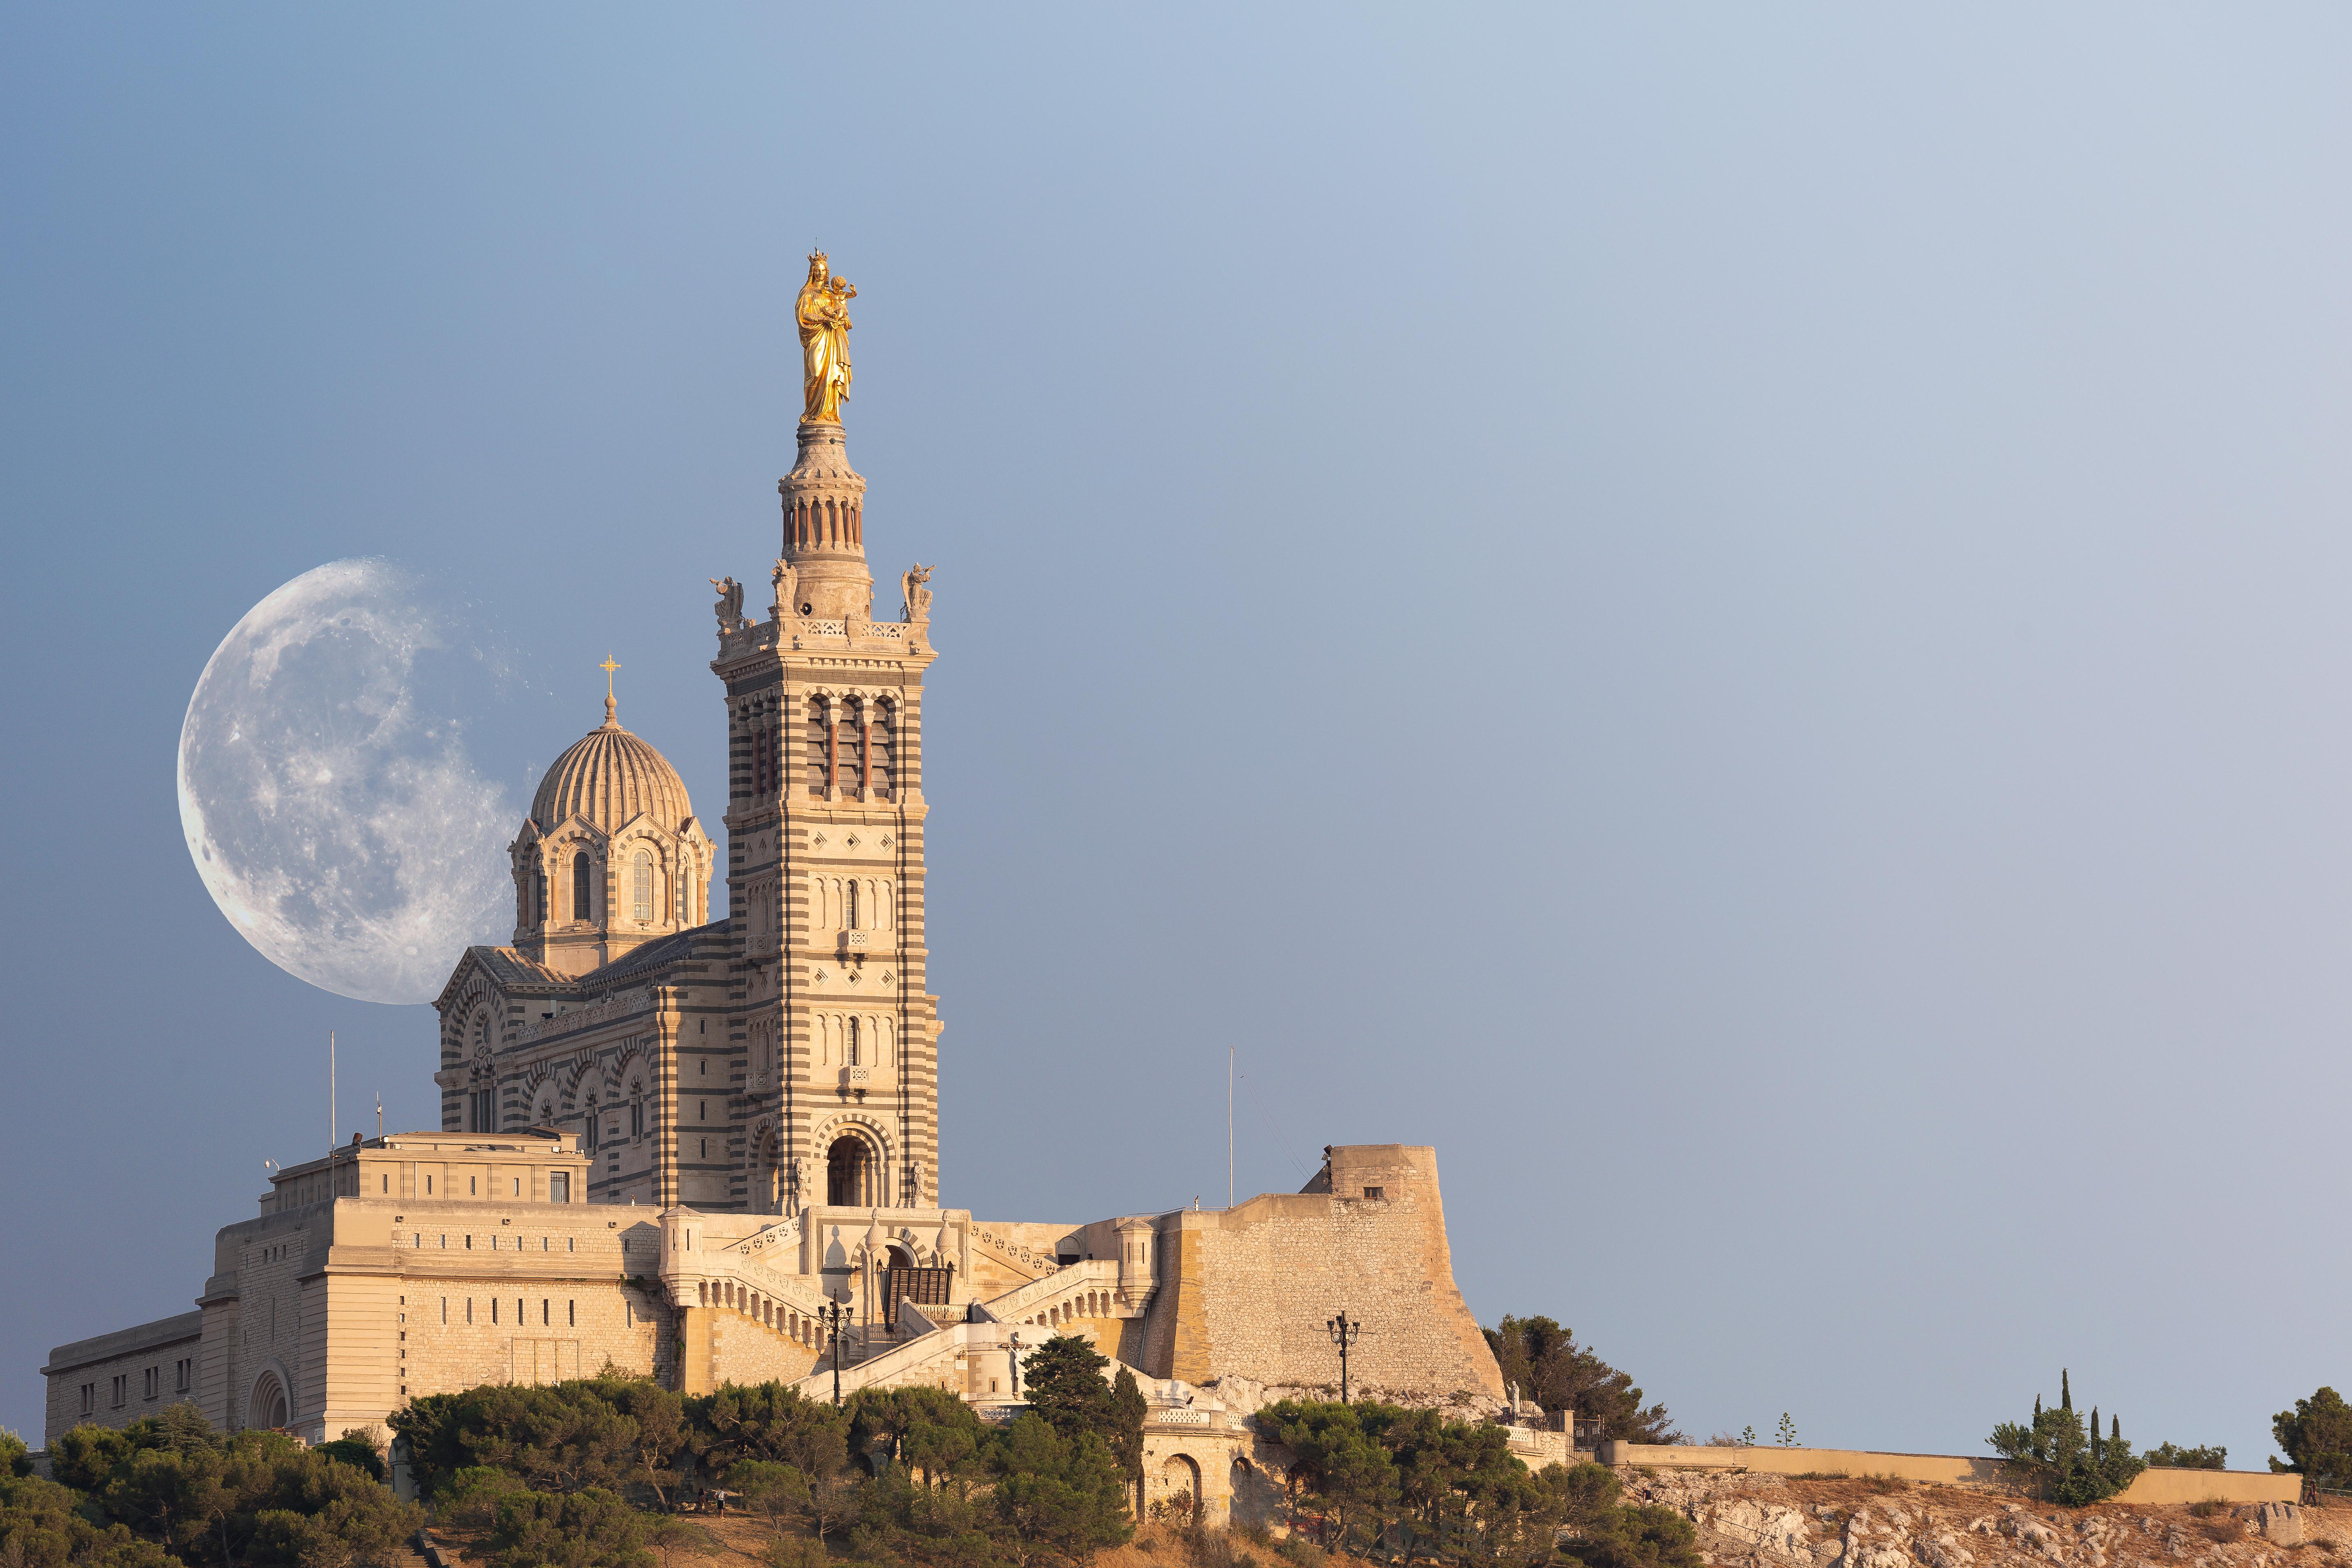 Notre-Dame-de-la-Garde, ein Symbol der Stadt Marseille